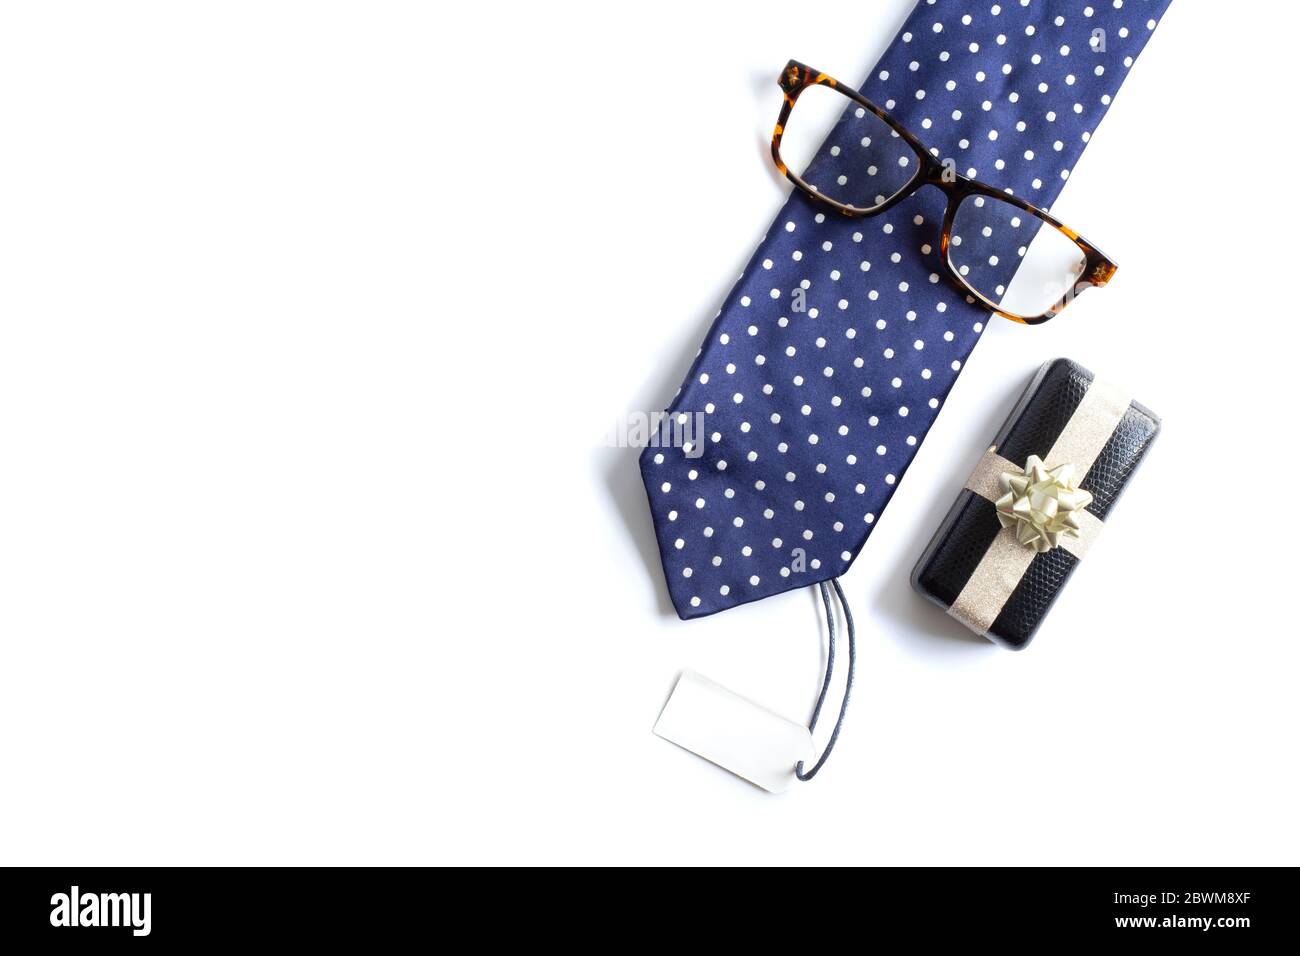 Cravate bleue, boîte cadeau emballée, lunettes et étiquette cadeau sur fond  blanc. Joyeux fête des pères, concept de cadeau d'affaires. Maquette, carte  de vœux, symbole Photo Stock - Alamy